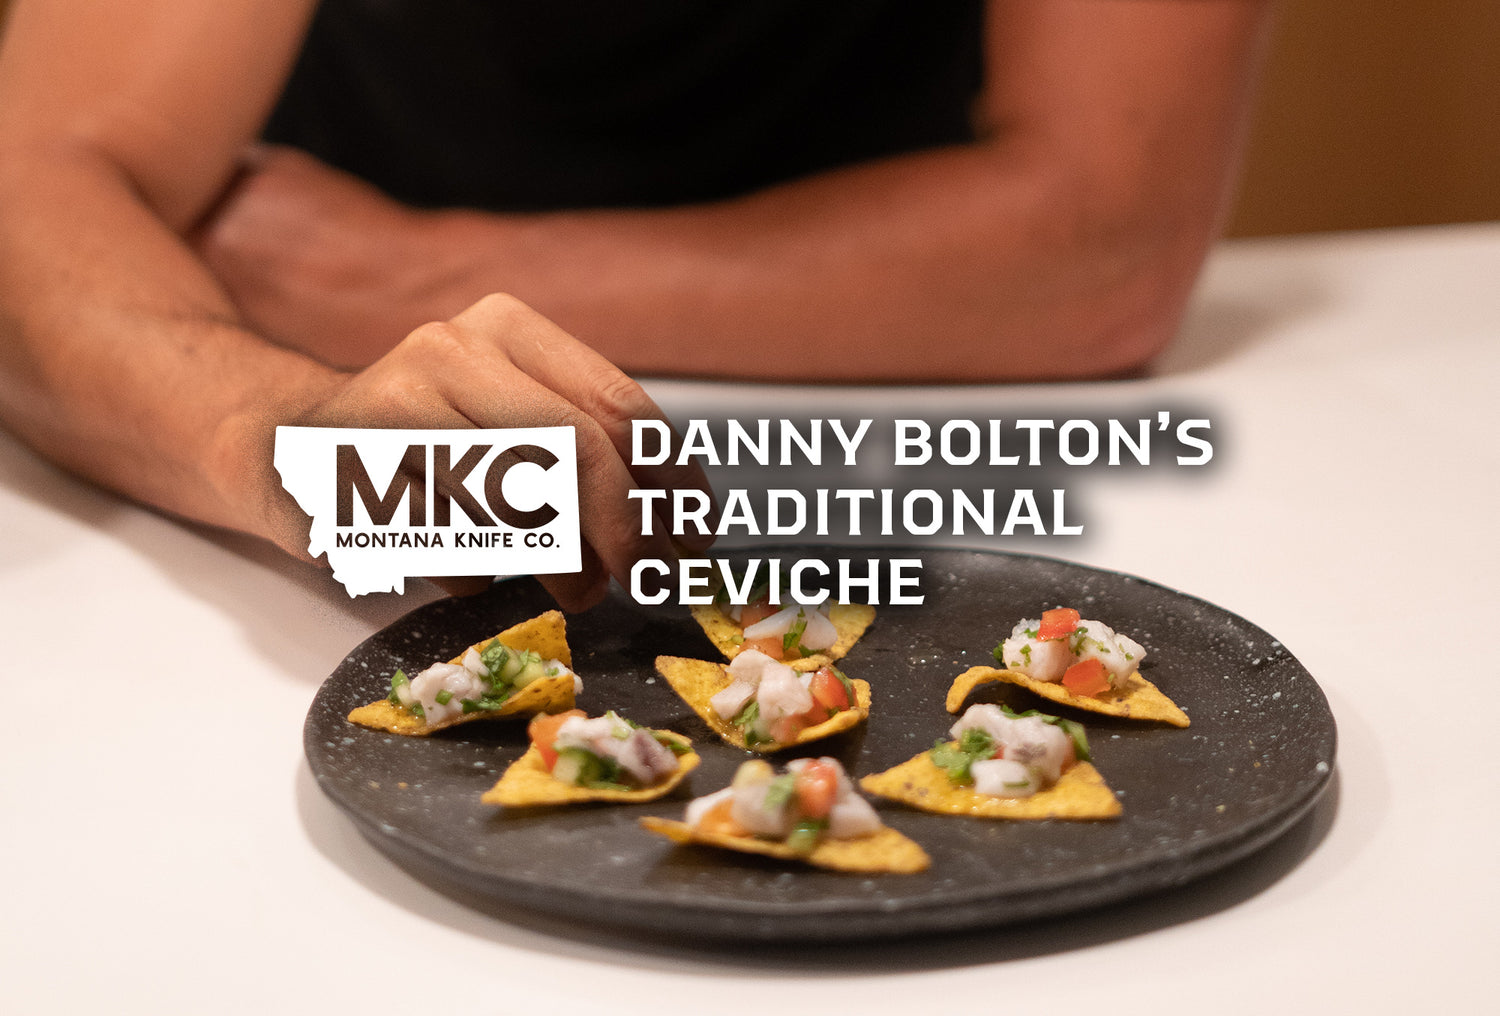 Danny Bolton’s Traditional Ceviche